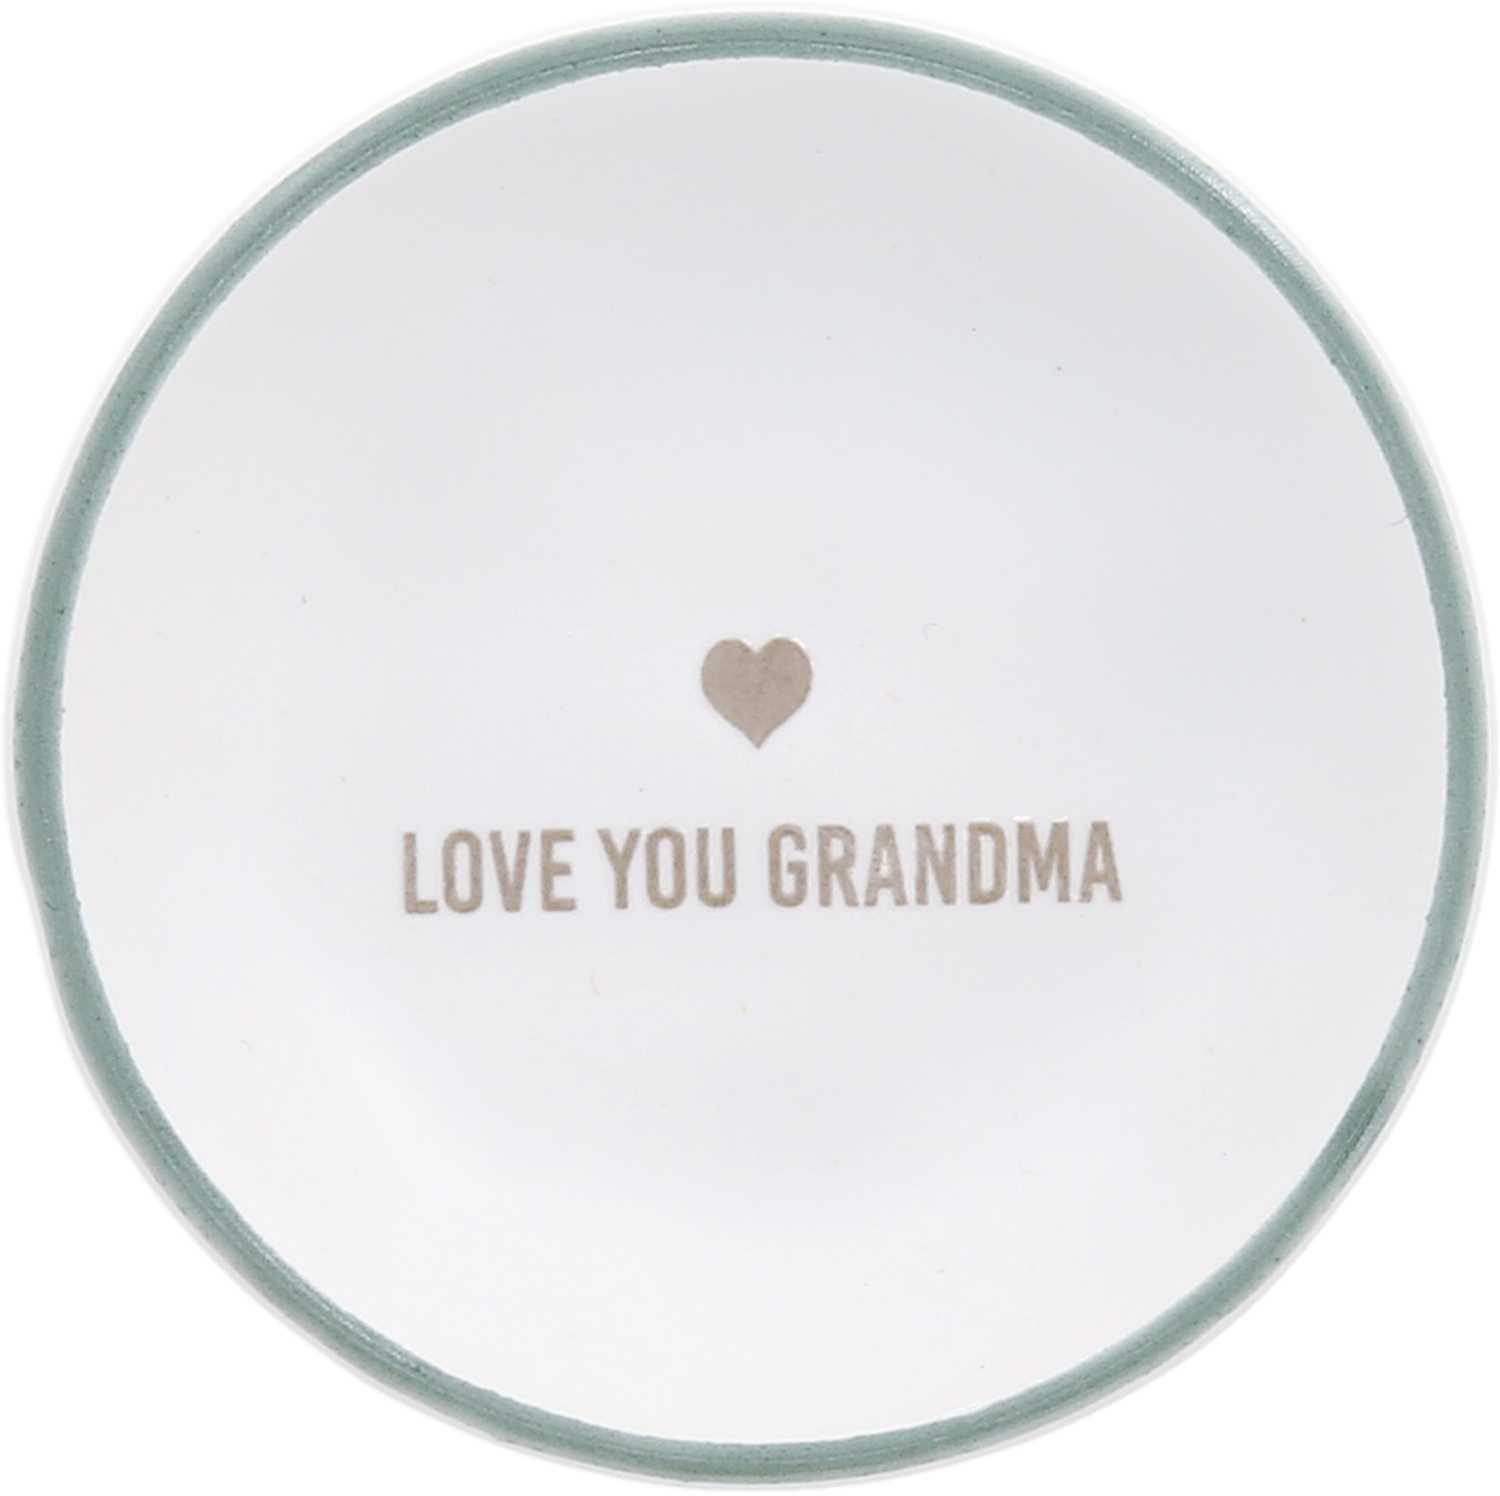 Love You Grandma by Love You - Love You Grandma - 2.5" Trinket Dish